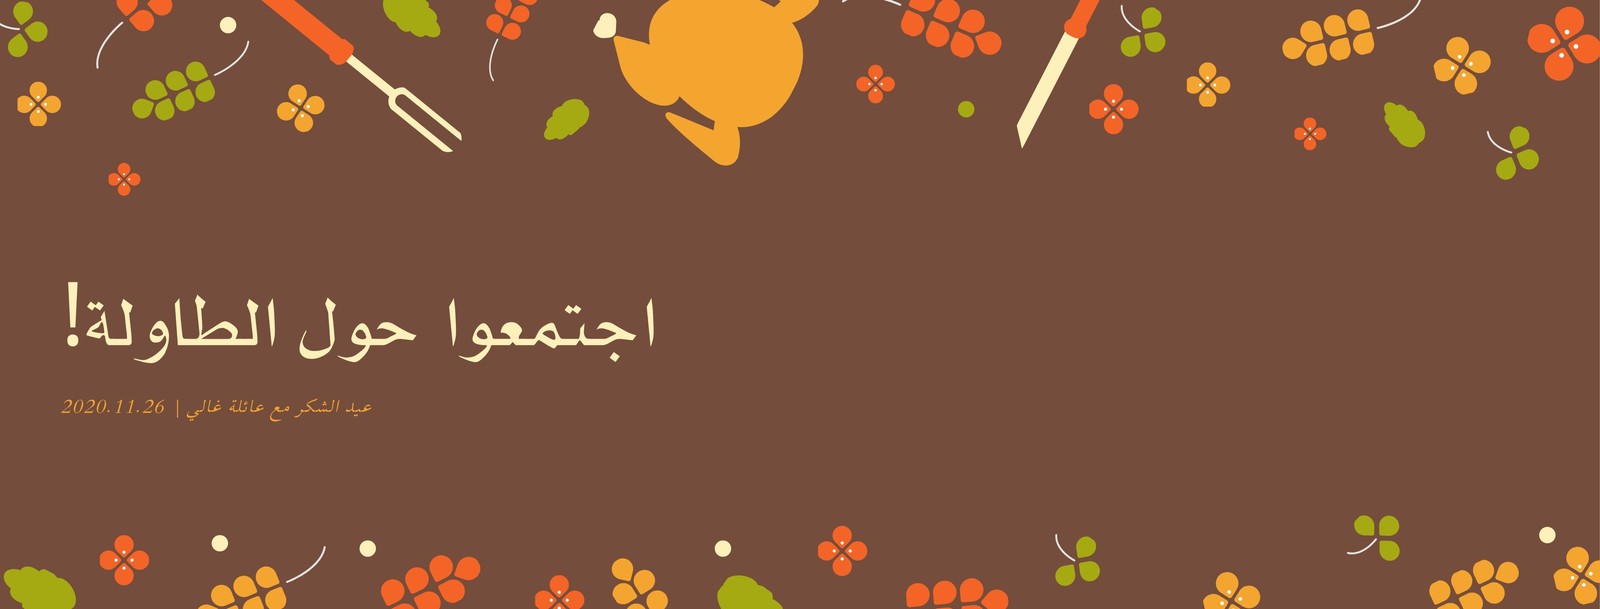 غلاف فيسبوك بني مرسوم عيد الشكر